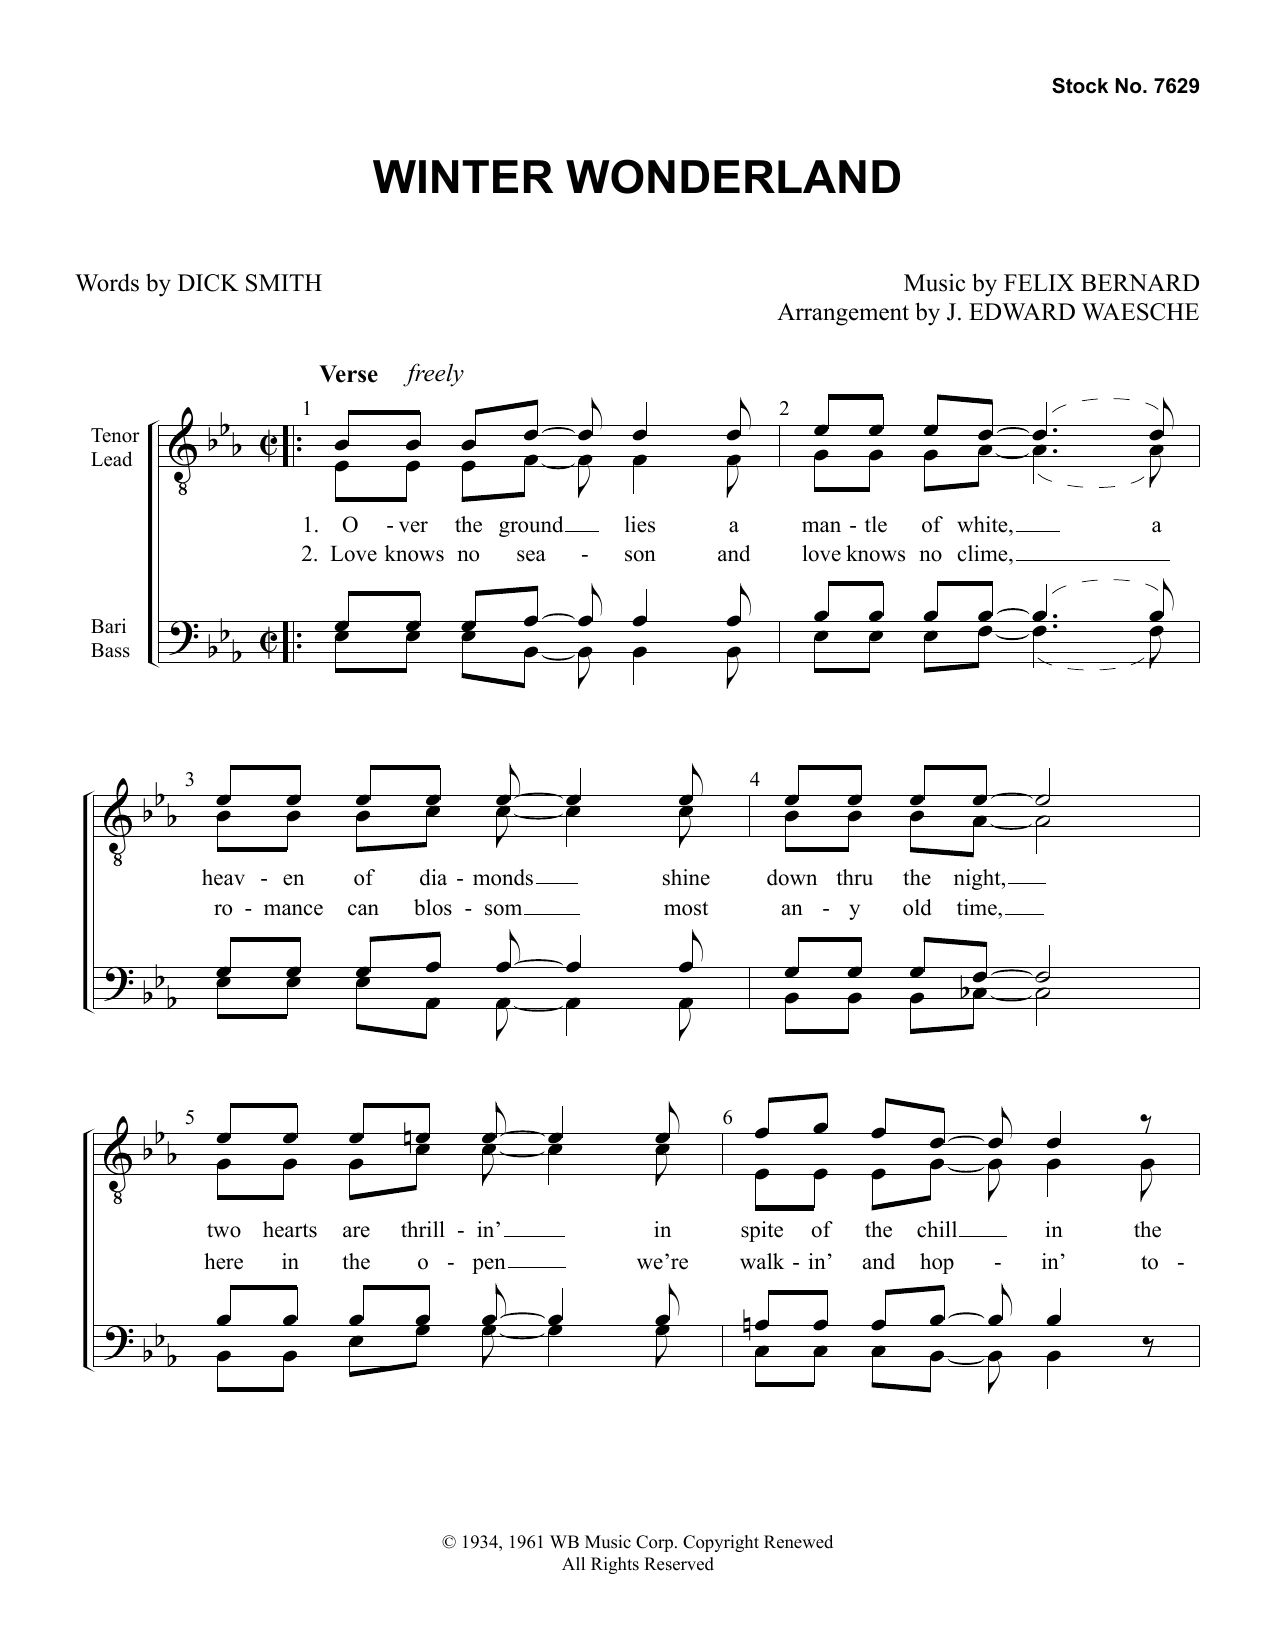 Download Dick Smith & Felix Bernard Winter Wonderland (arr. Ed Waesche) Sheet Music and learn how to play TTBB Choir PDF digital score in minutes